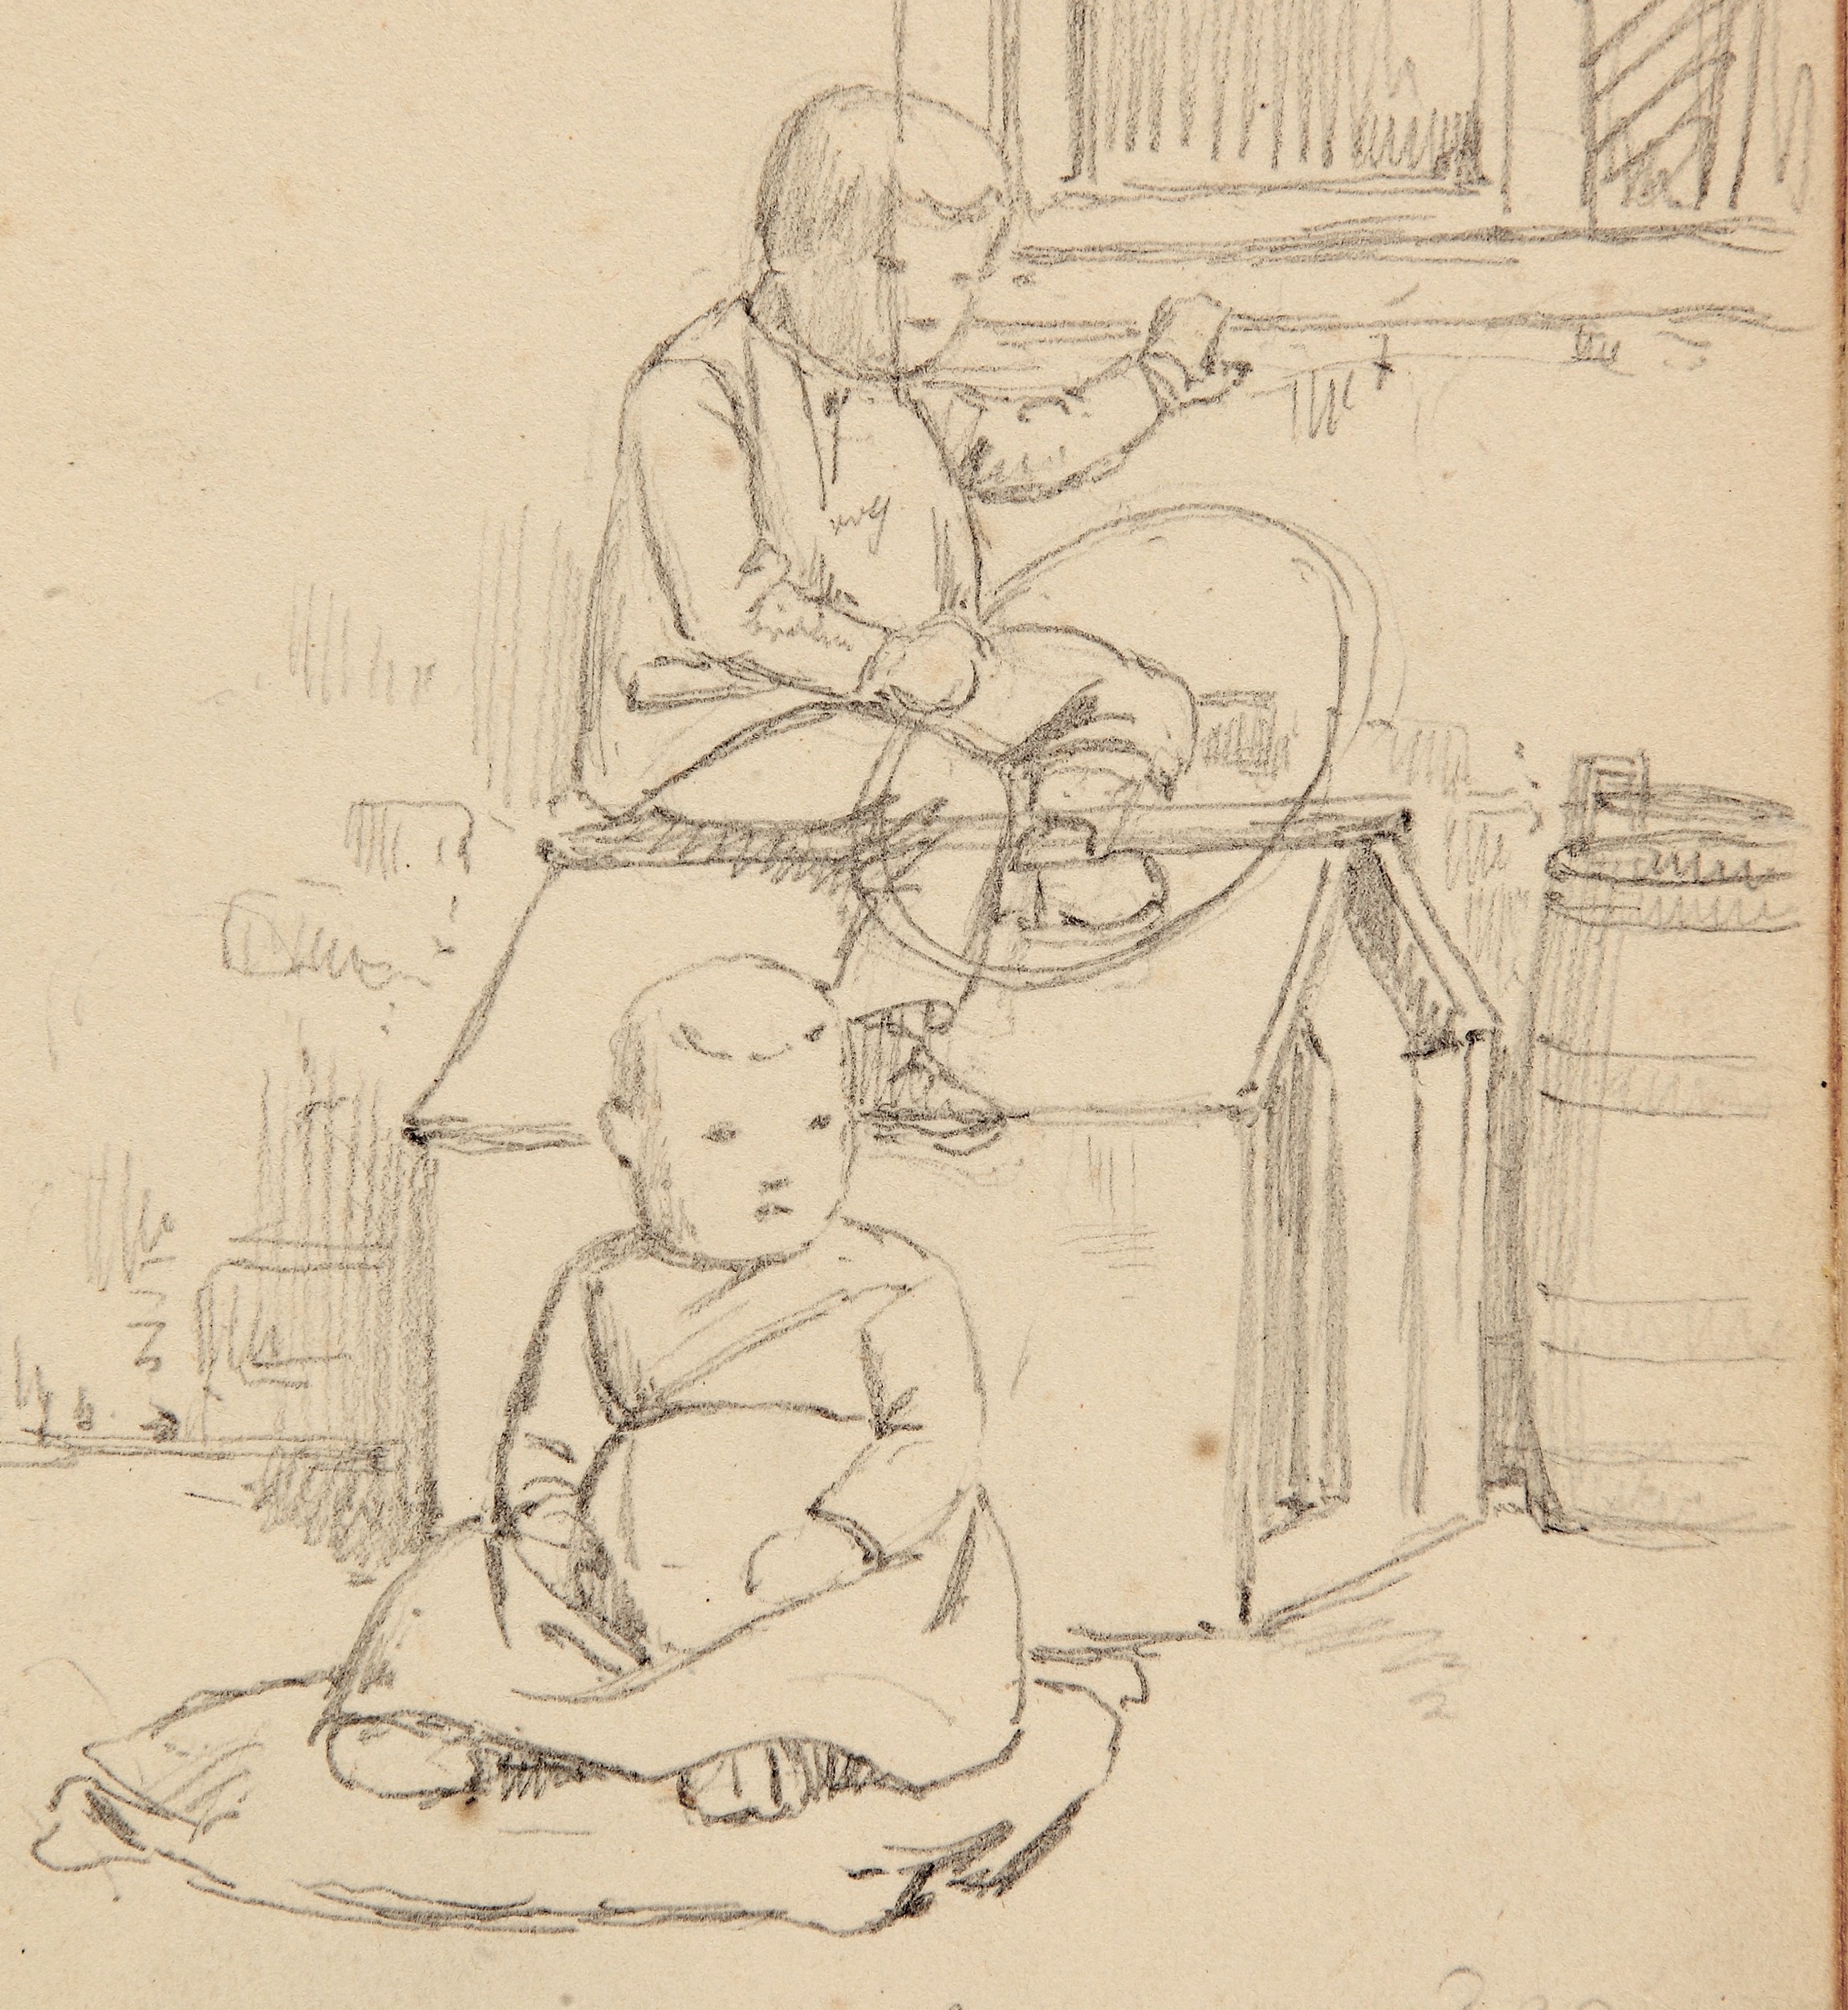 Il. 2 Ludwig Most, Dzieci bawiące się przy psiej budzie, 5.07.1848, ołówek, papier czerpany welinowy, rysunek w szkicowniku nr II, karta 39, Muzeum Narodowe w Szczecinie